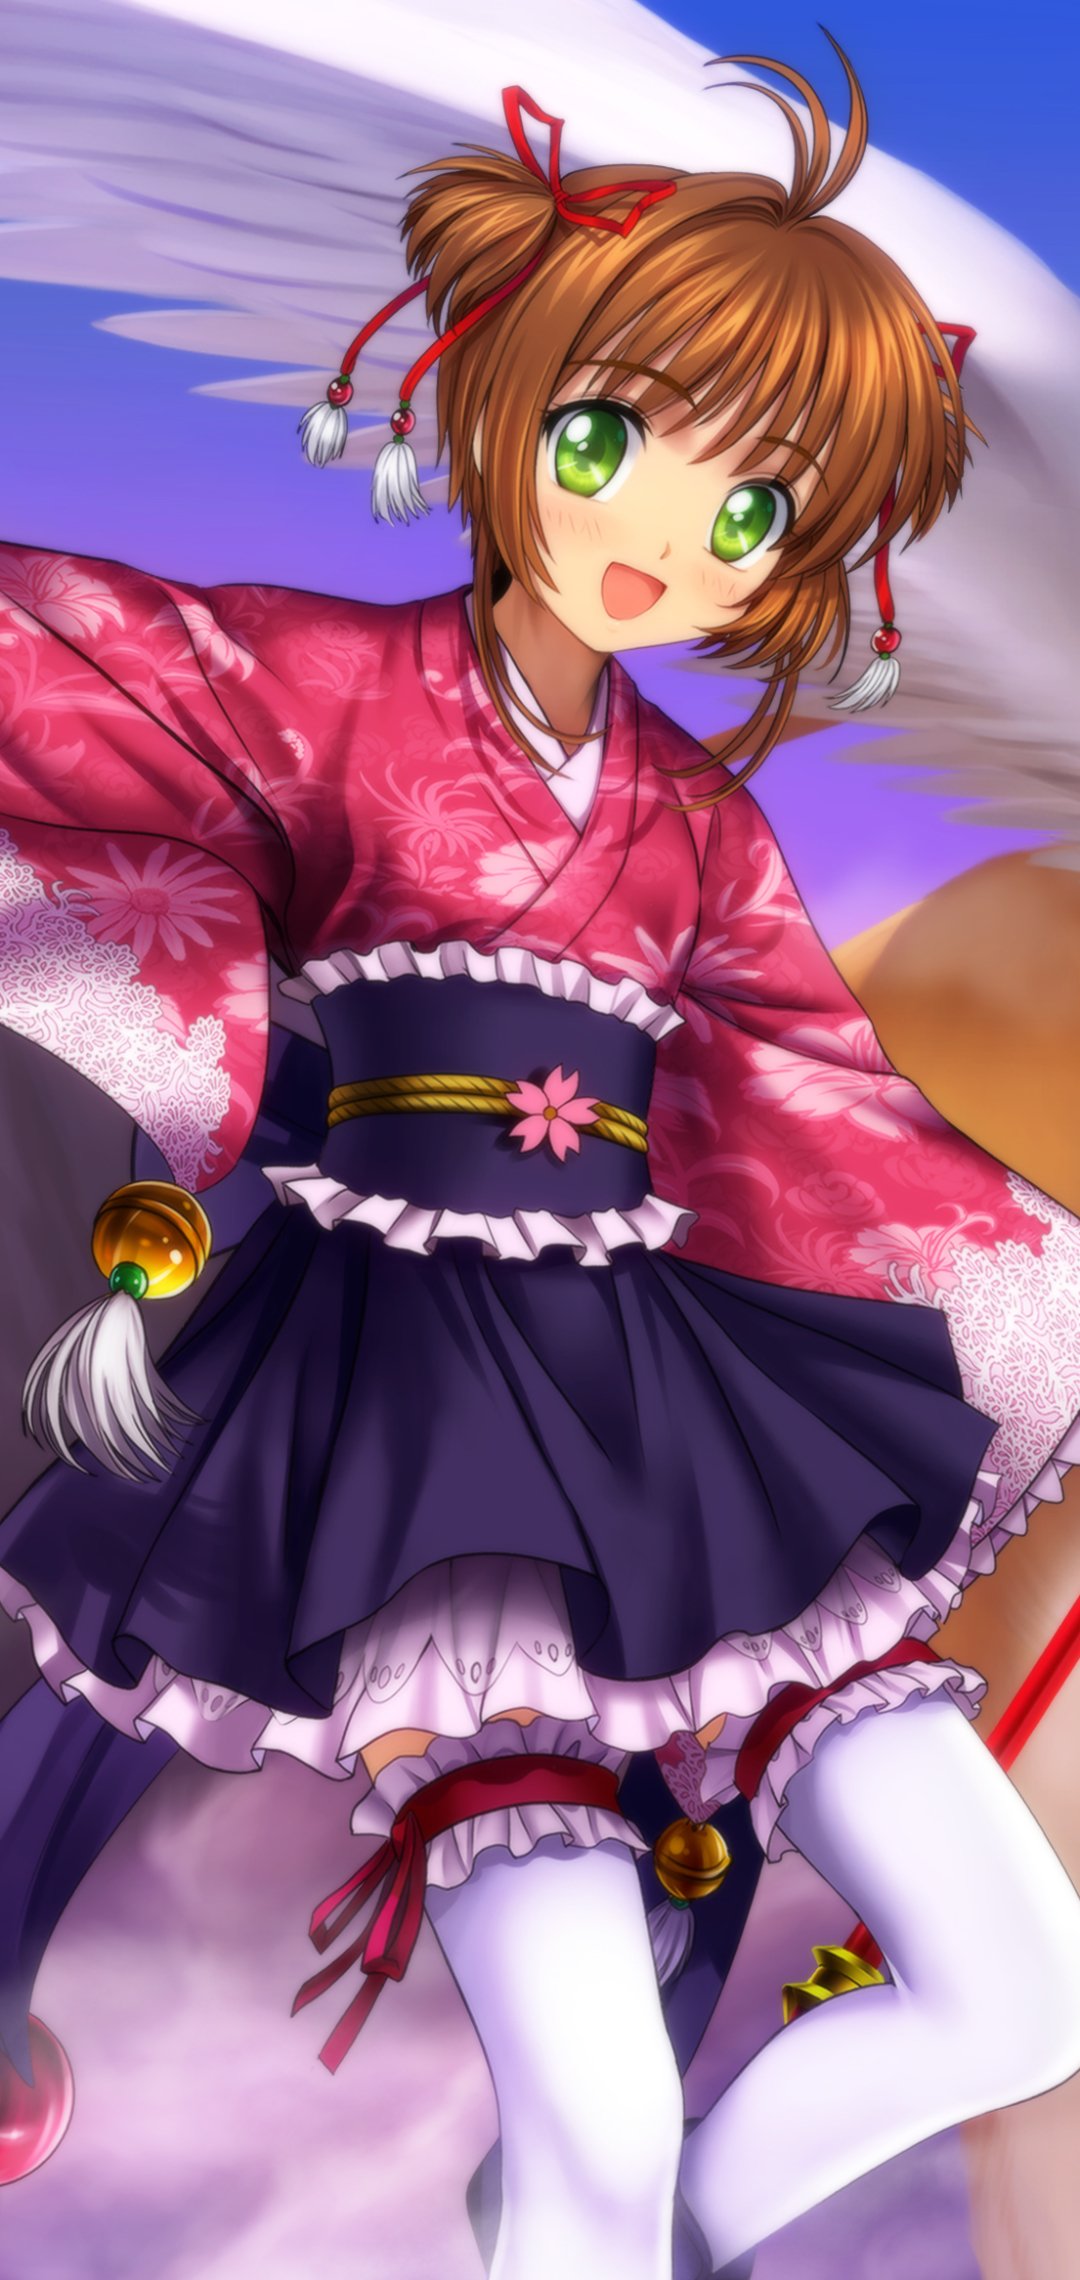 Hình ảnh Sakura thủ lĩnh thẻ bài xinh đẹp dễ thương nhất